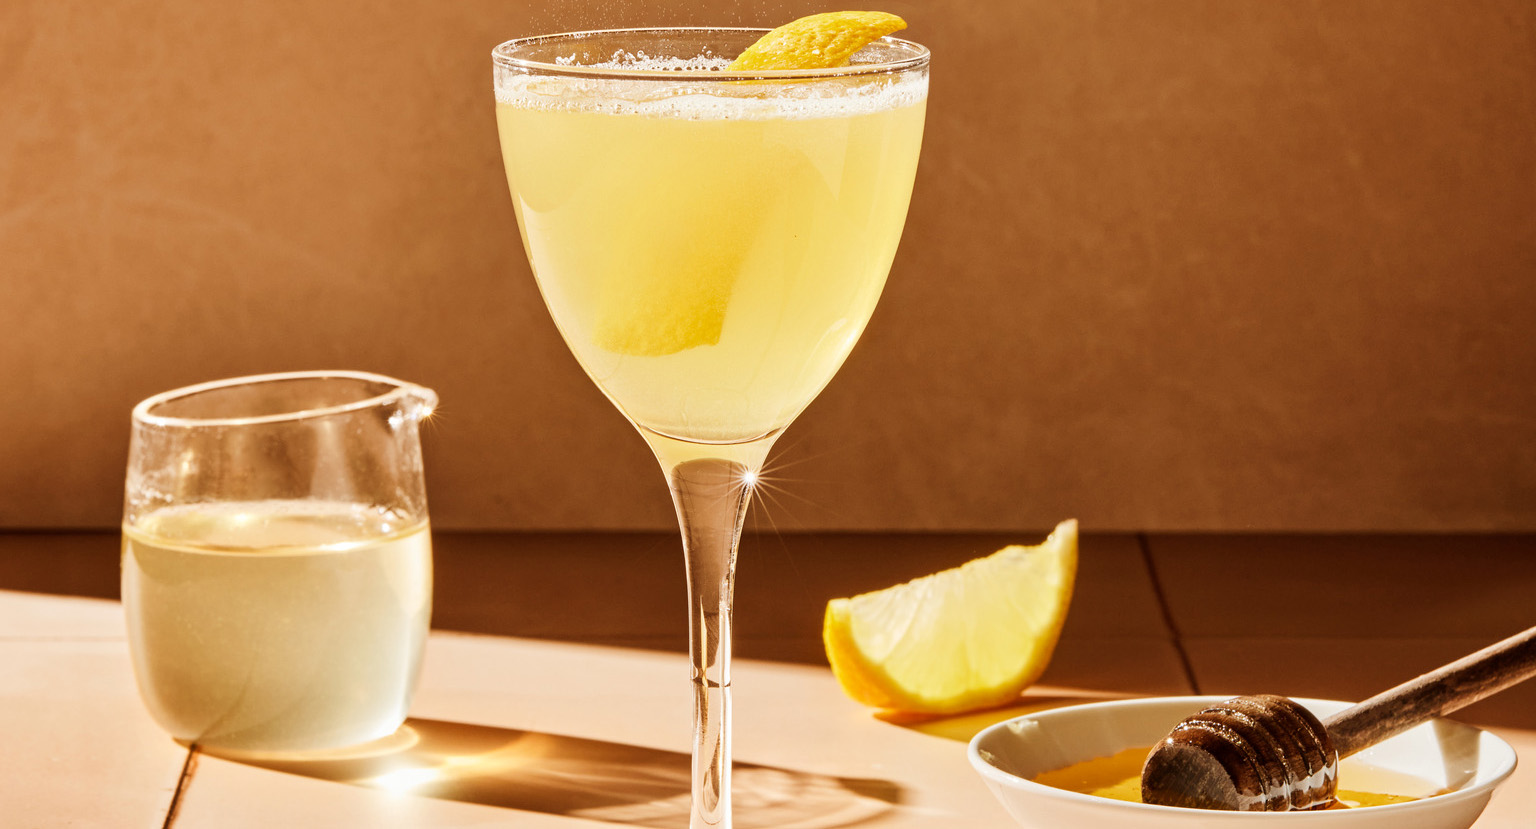 Stettglass med gul drikke og sitron og honning på bordet.